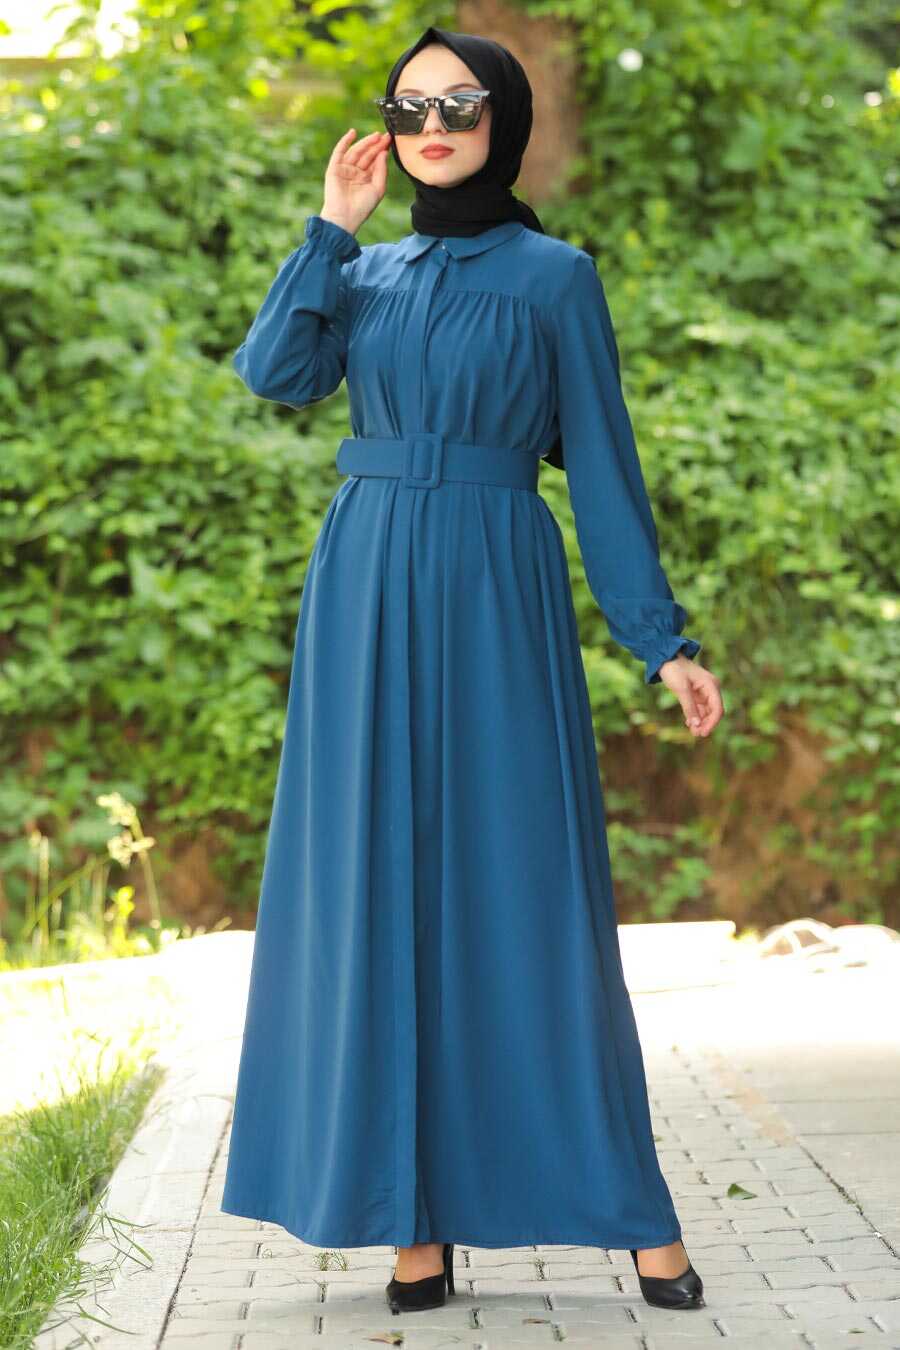 İndigo Blue Hijab Daily Dress 12580IM - Neva-style.com